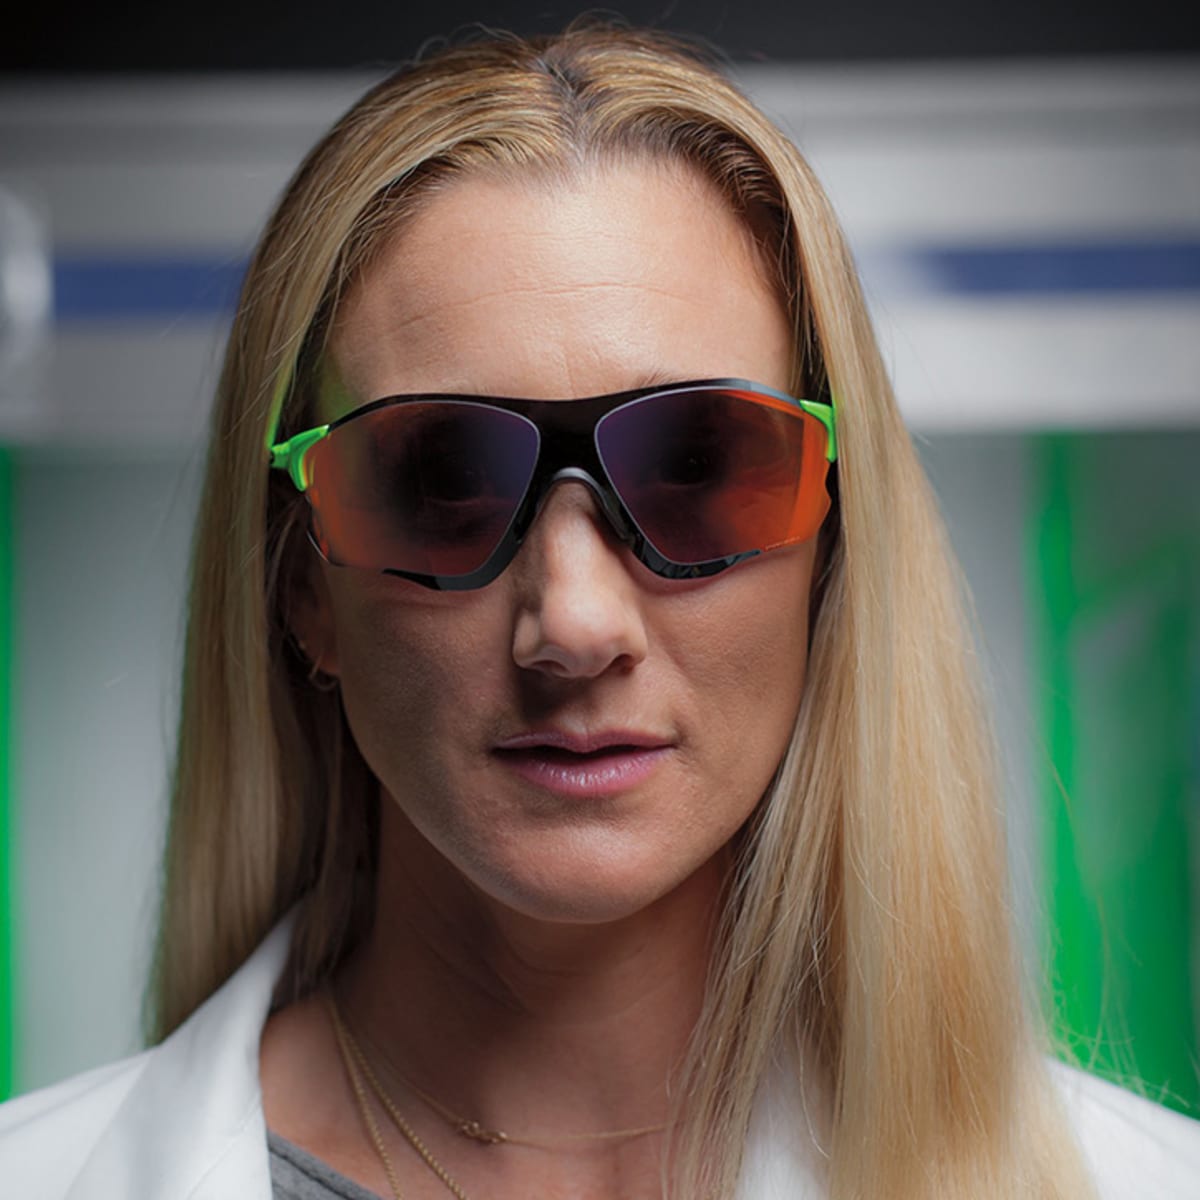 Rio 2016 athlete sunglasses: Oakley 